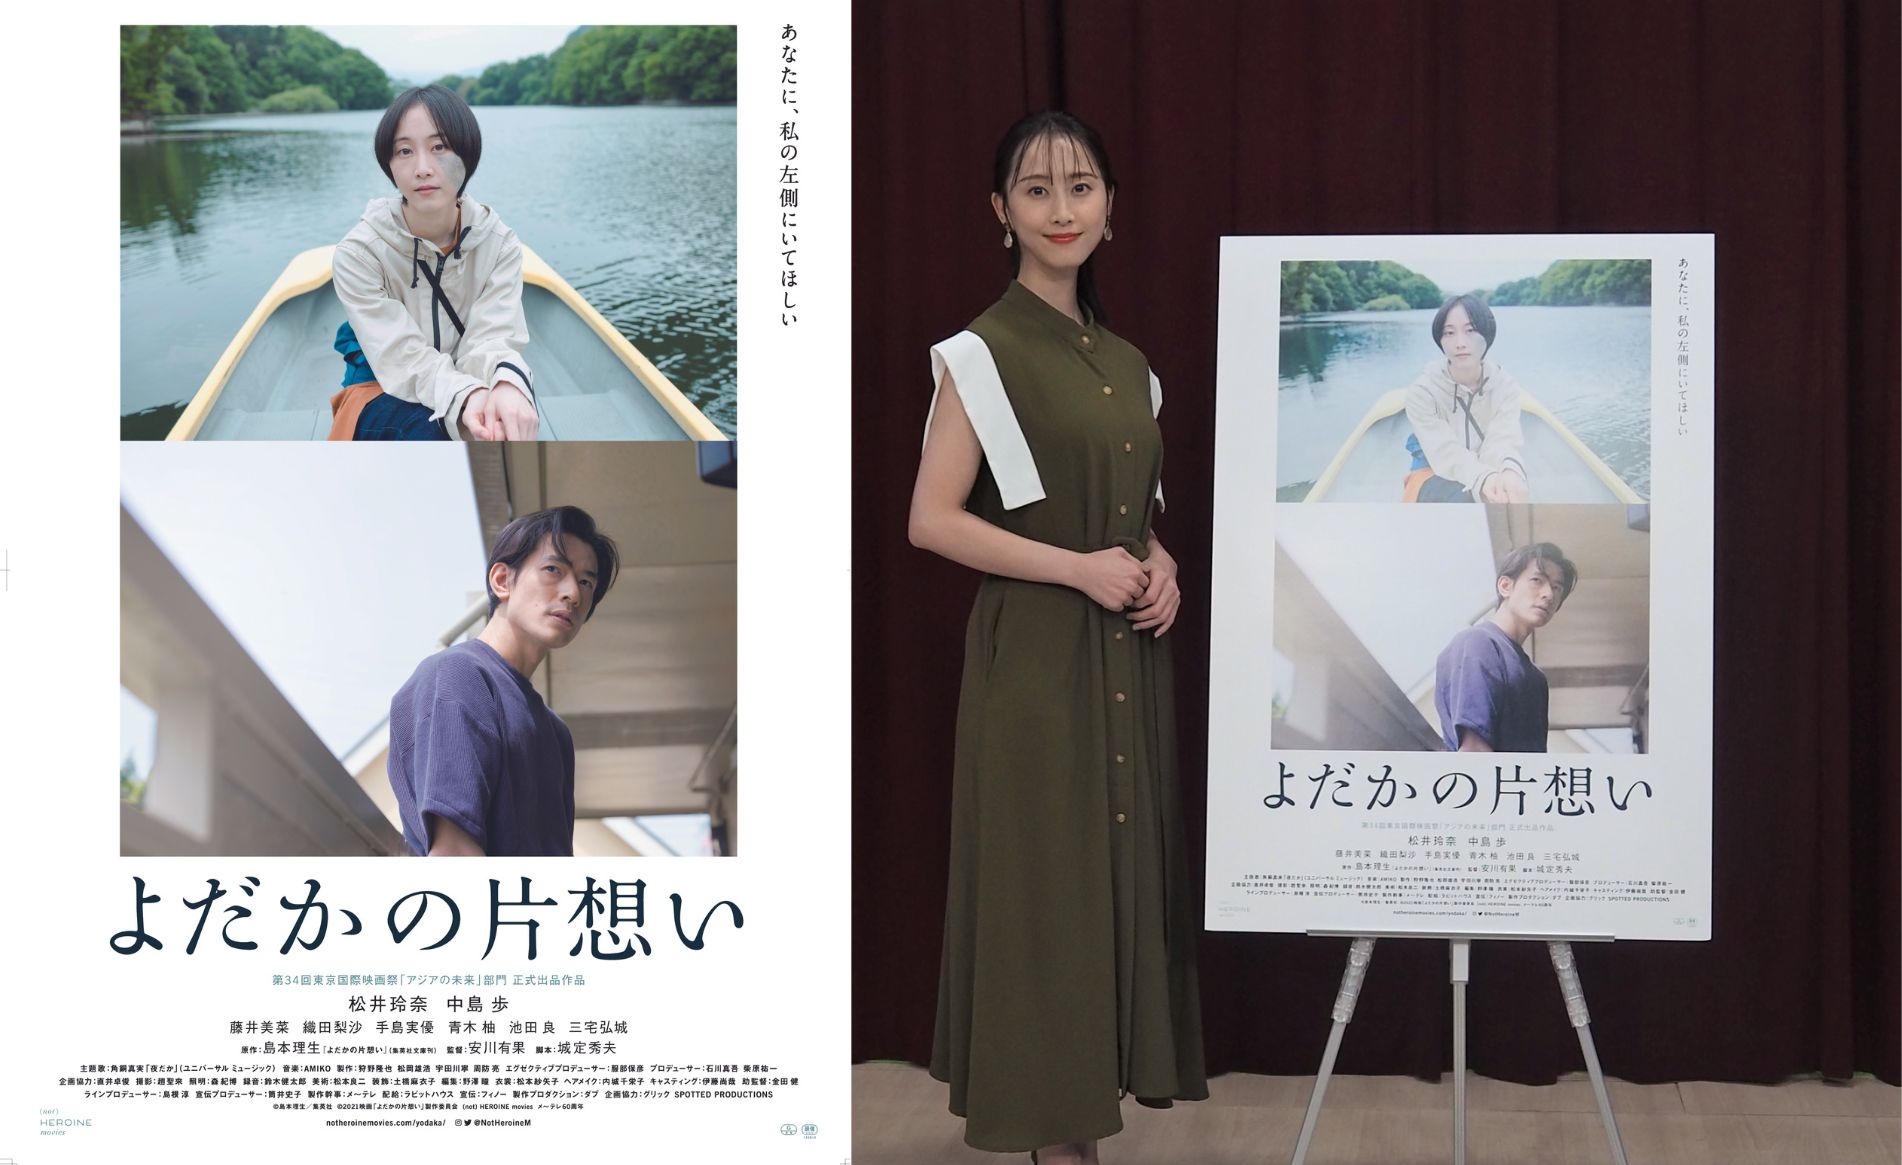 【インタビュー】映画『よだかの片想い』。主演・松井玲奈さん自身も惚れ込んだ、女子大生の“遅い初恋”を描いた強くも儚い恋物語。